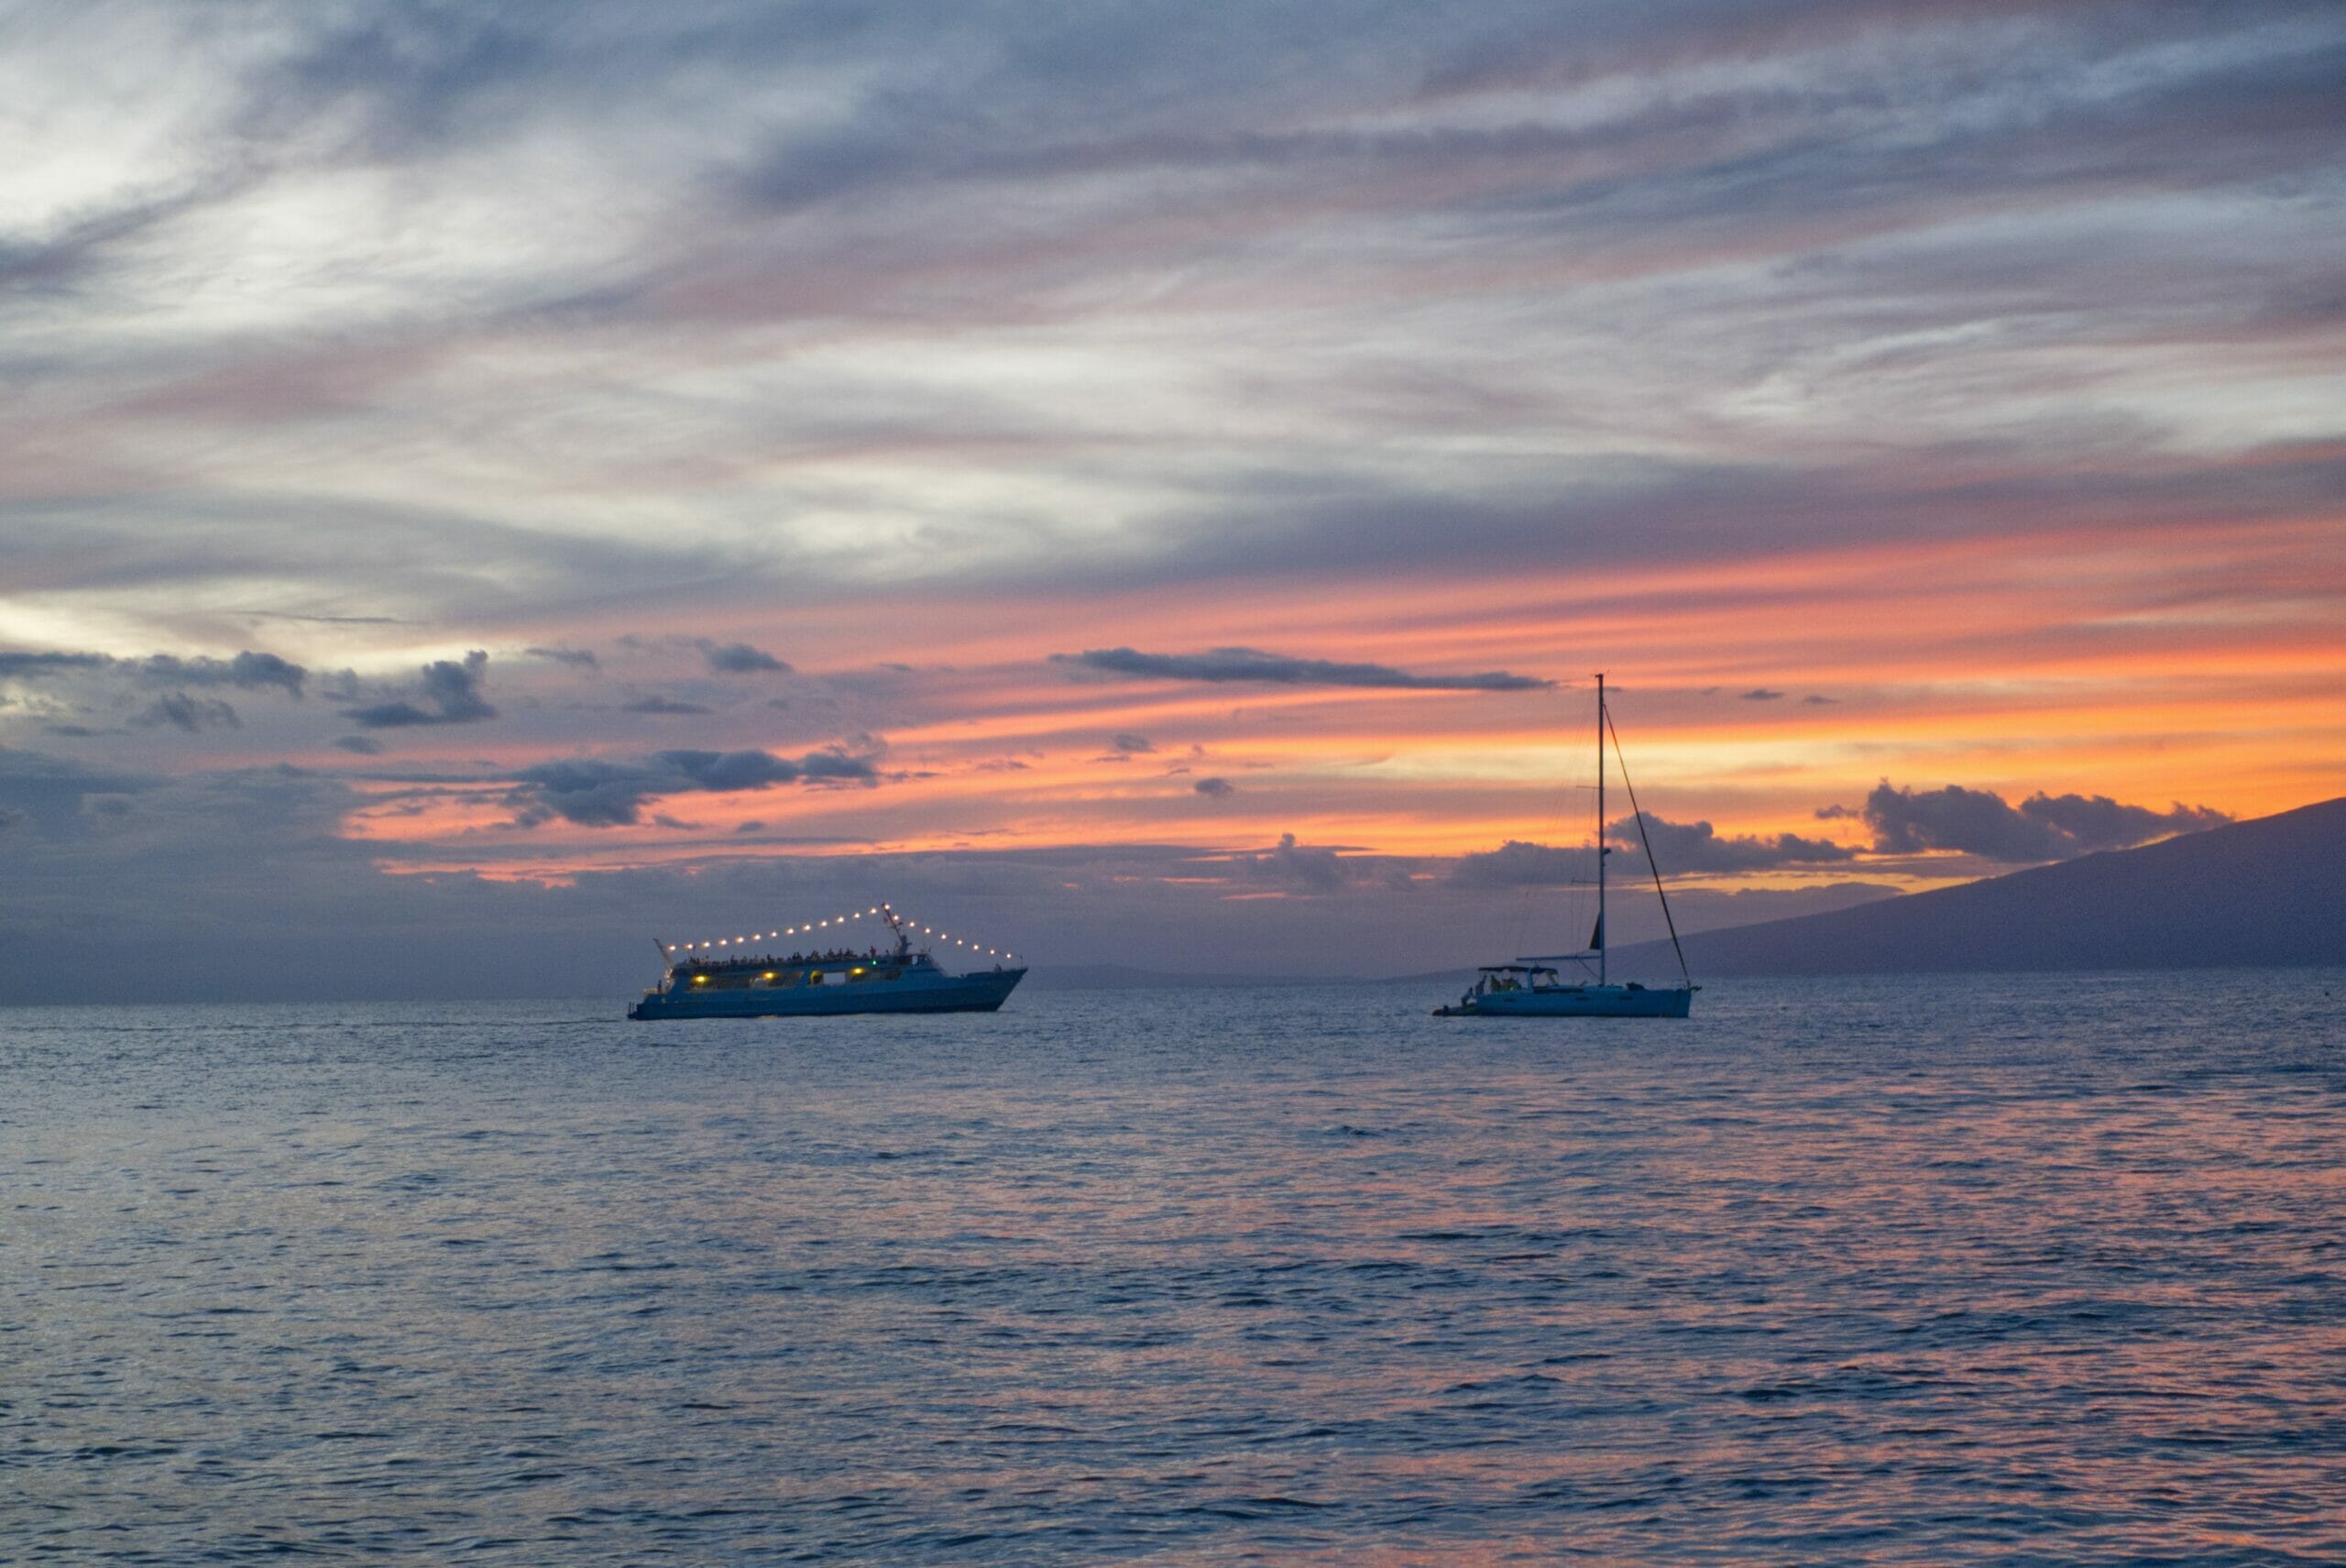 sea maui sunset cruise reviews